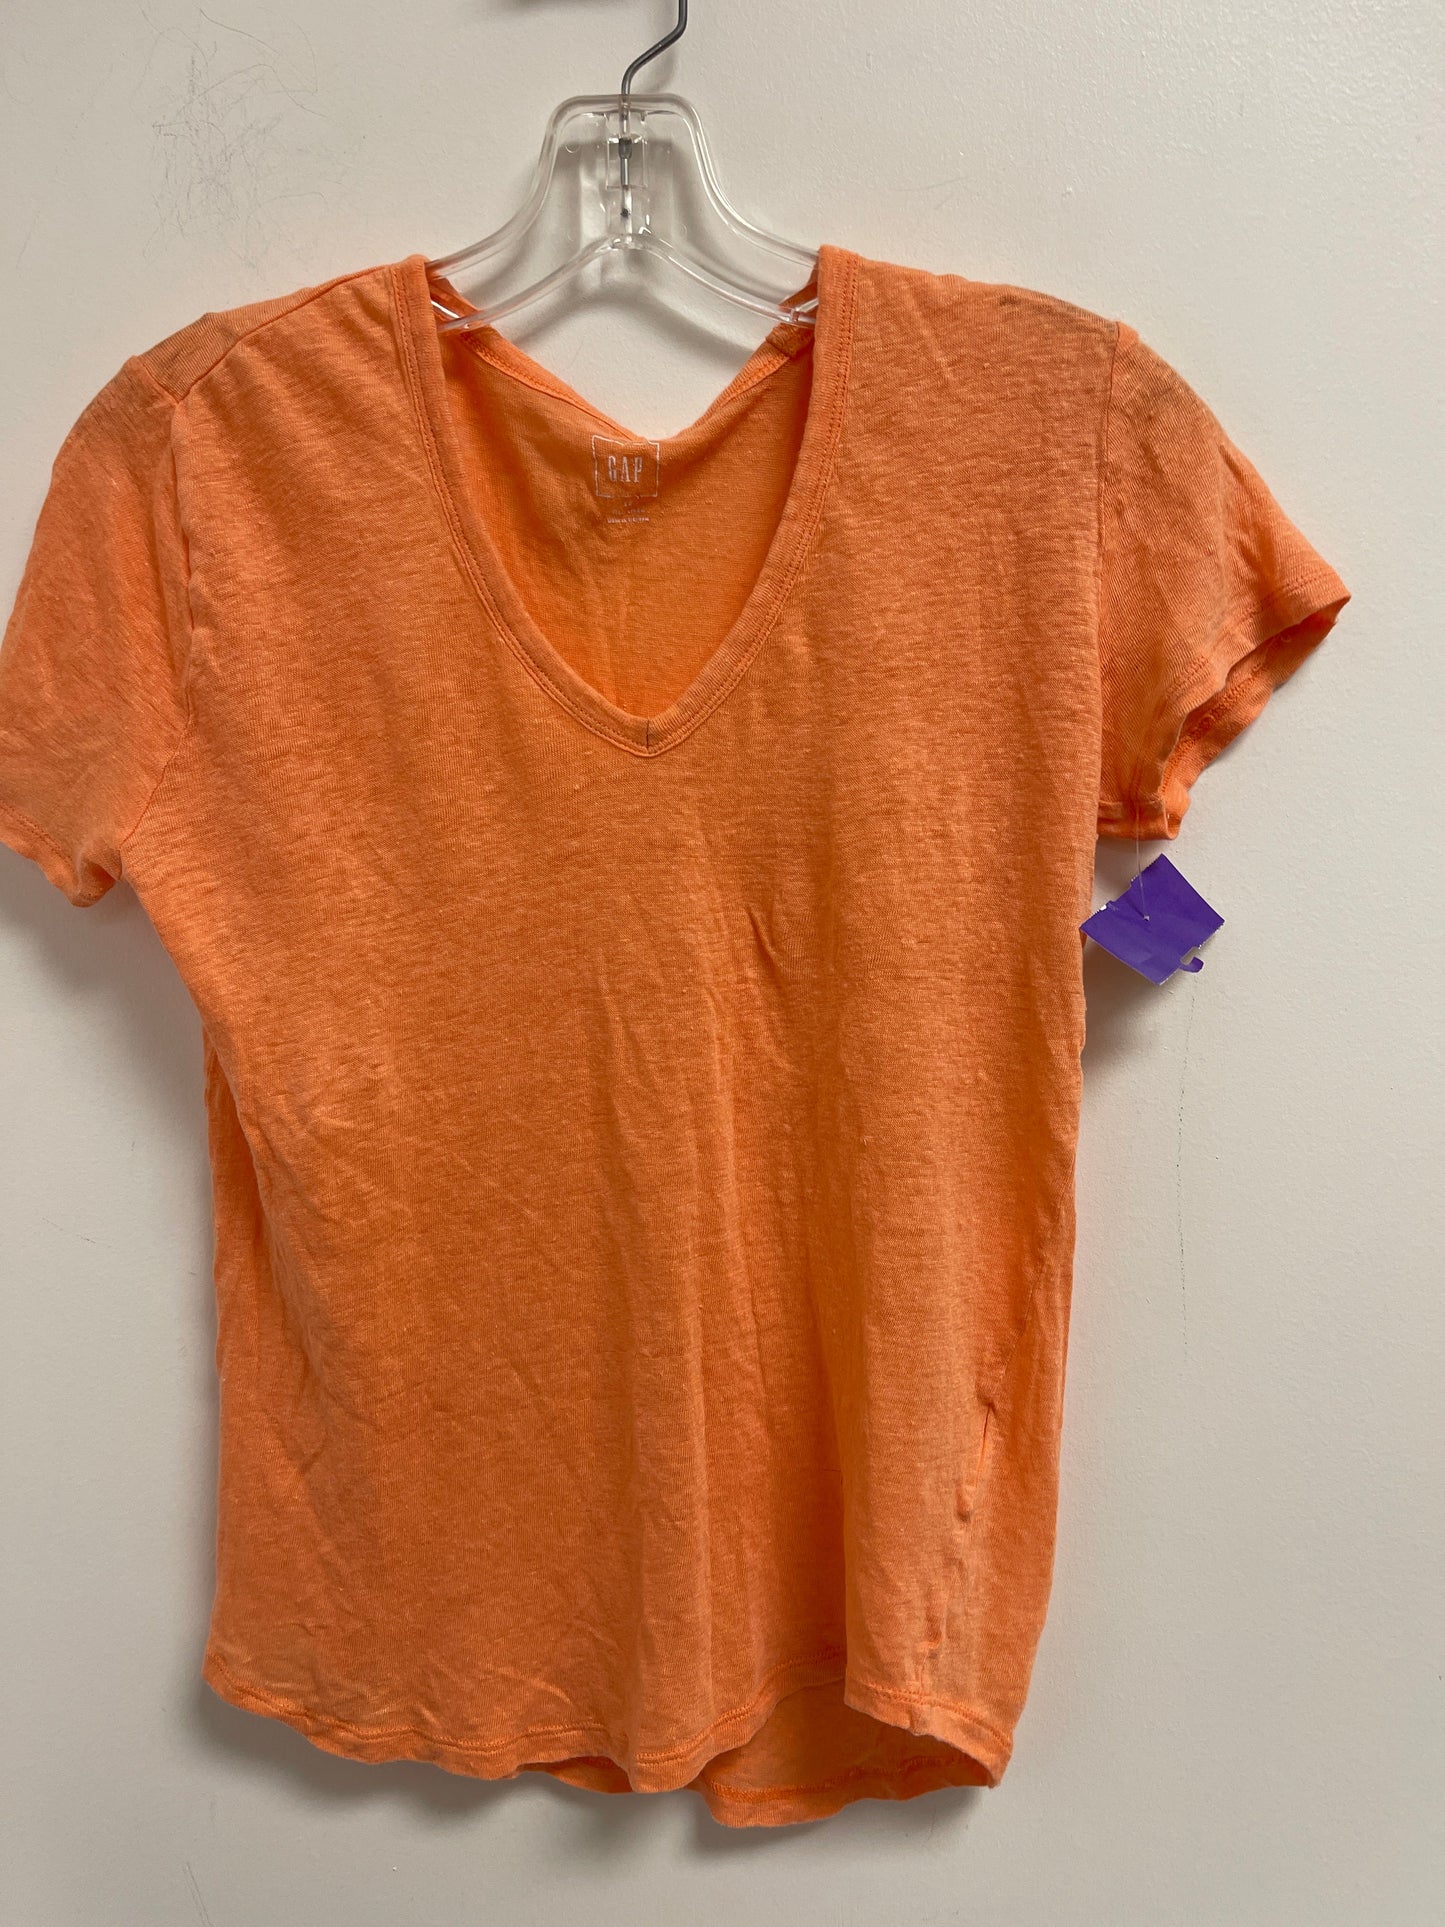 Orange Top Short Sleeve Basic Gap, Size Xs